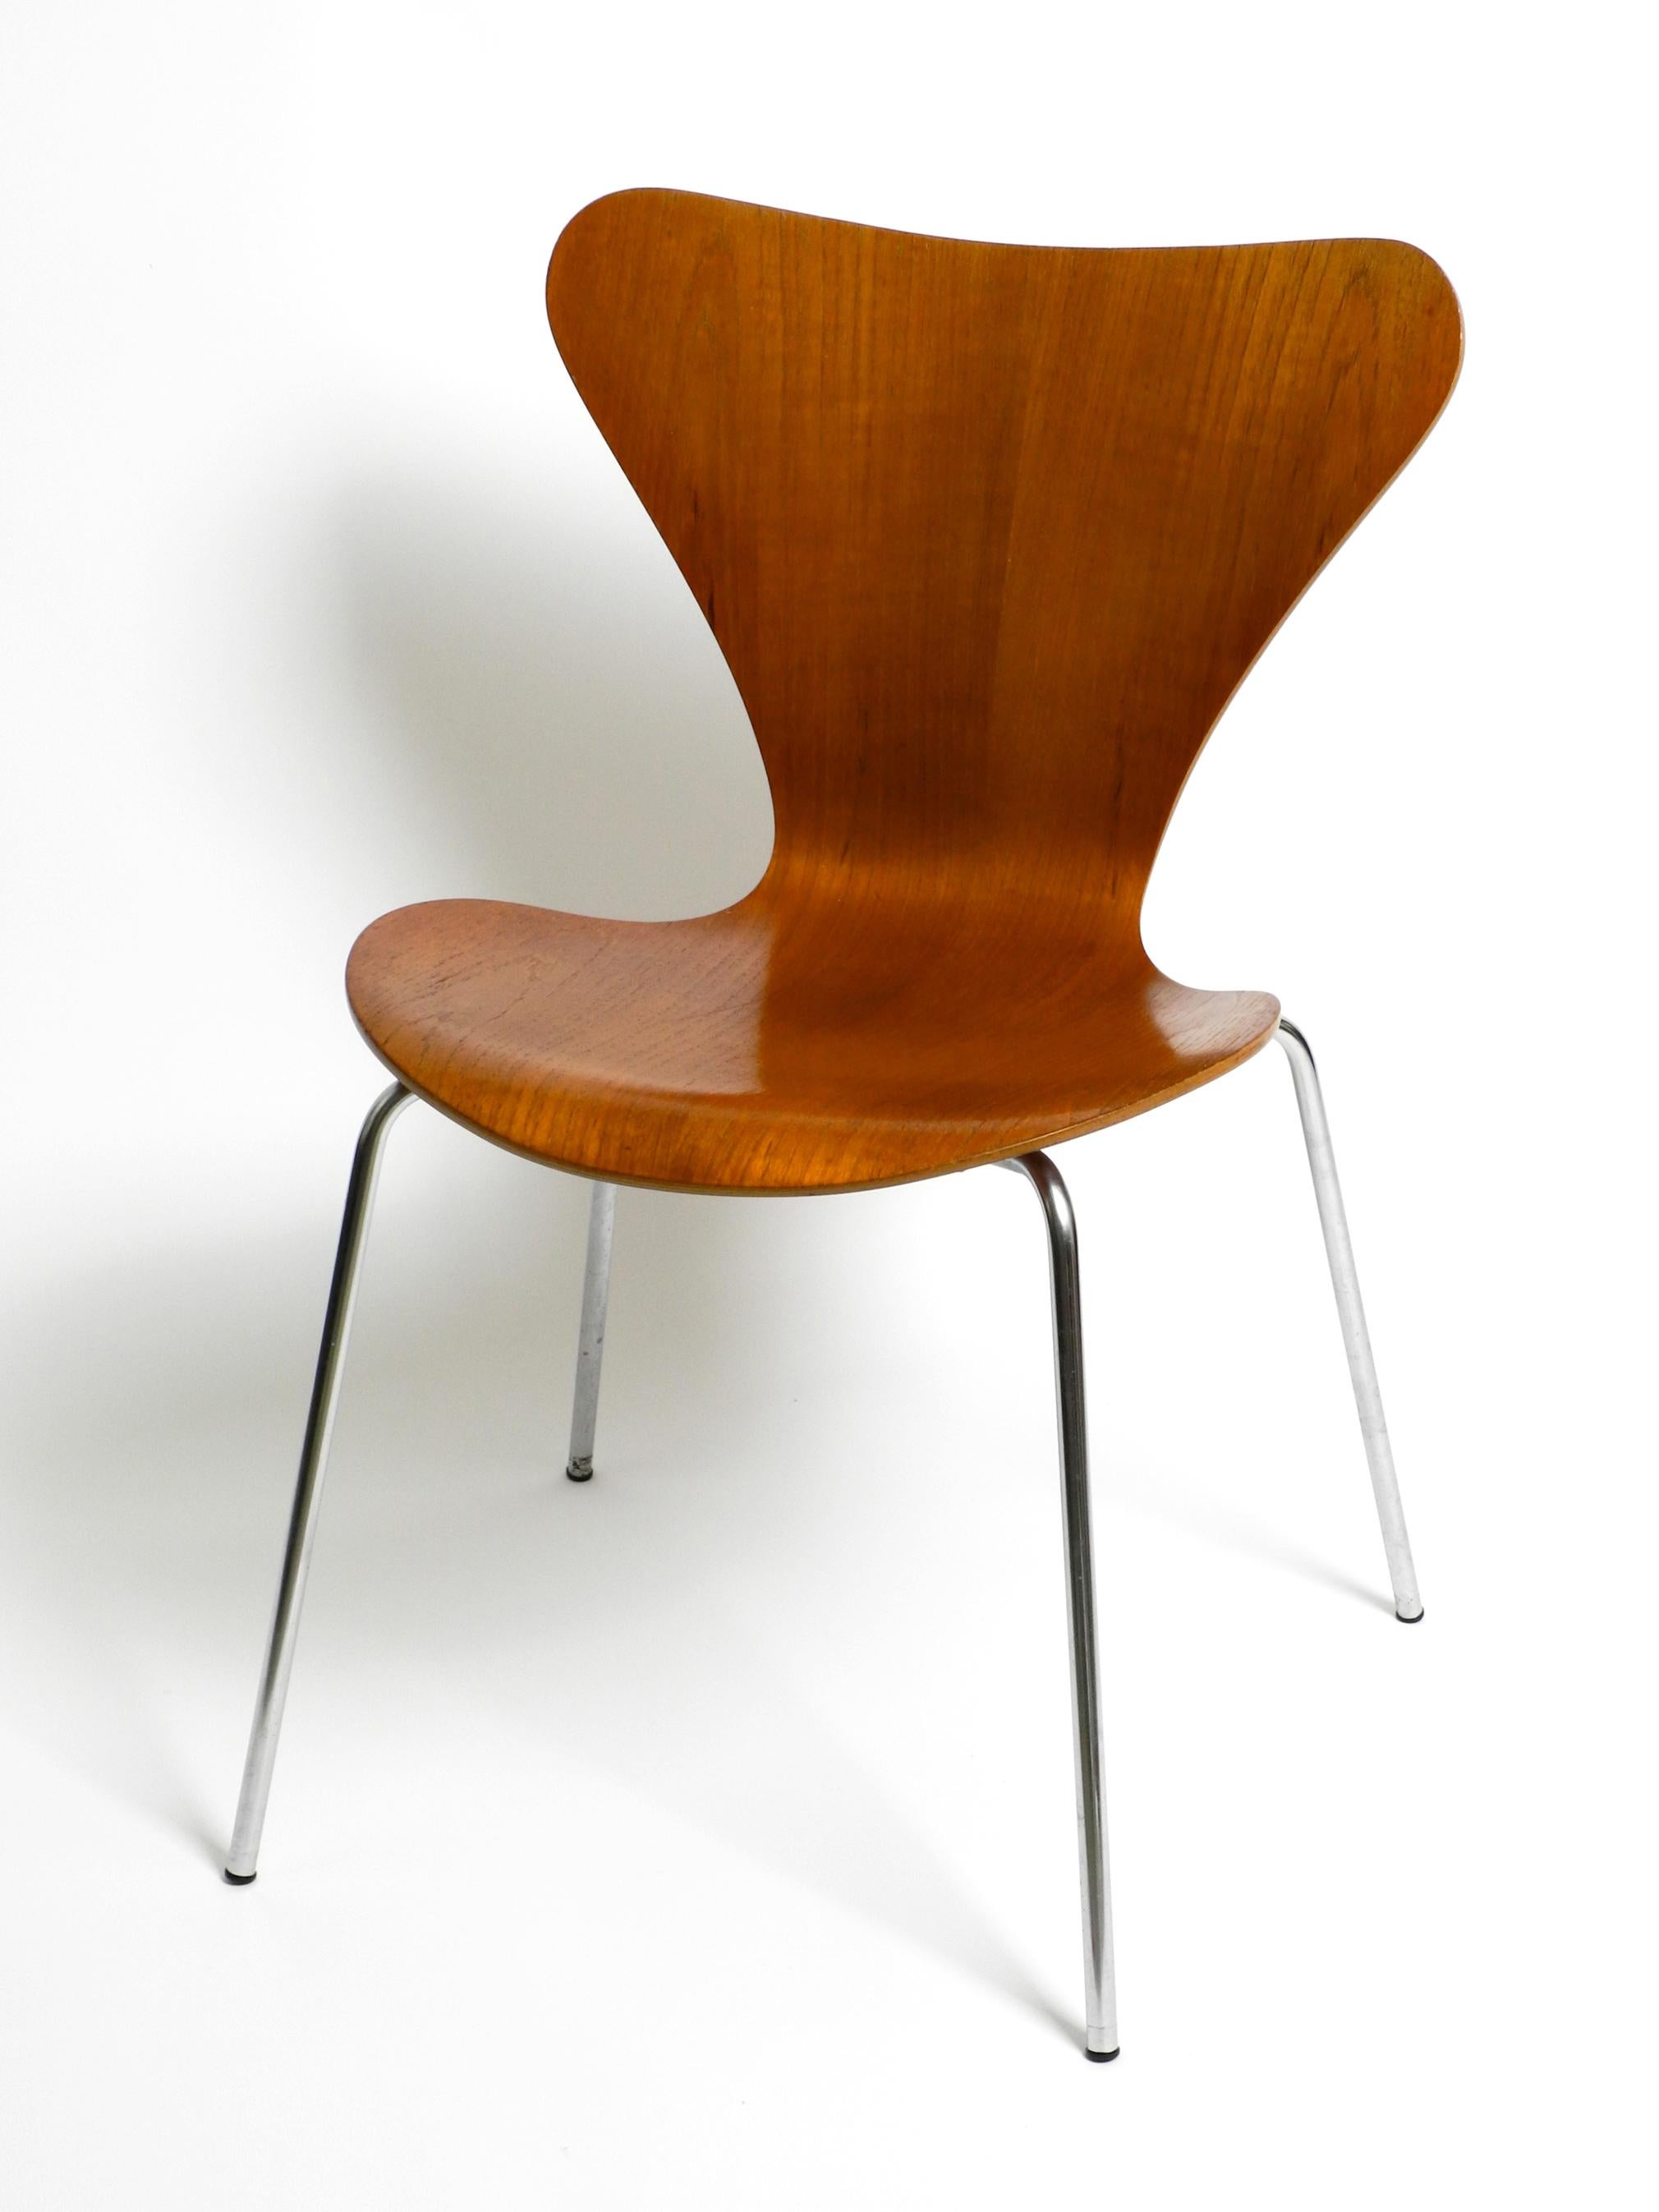 Original Arne Jacobsen Teak Chair from 1972 Mod. 3107 10